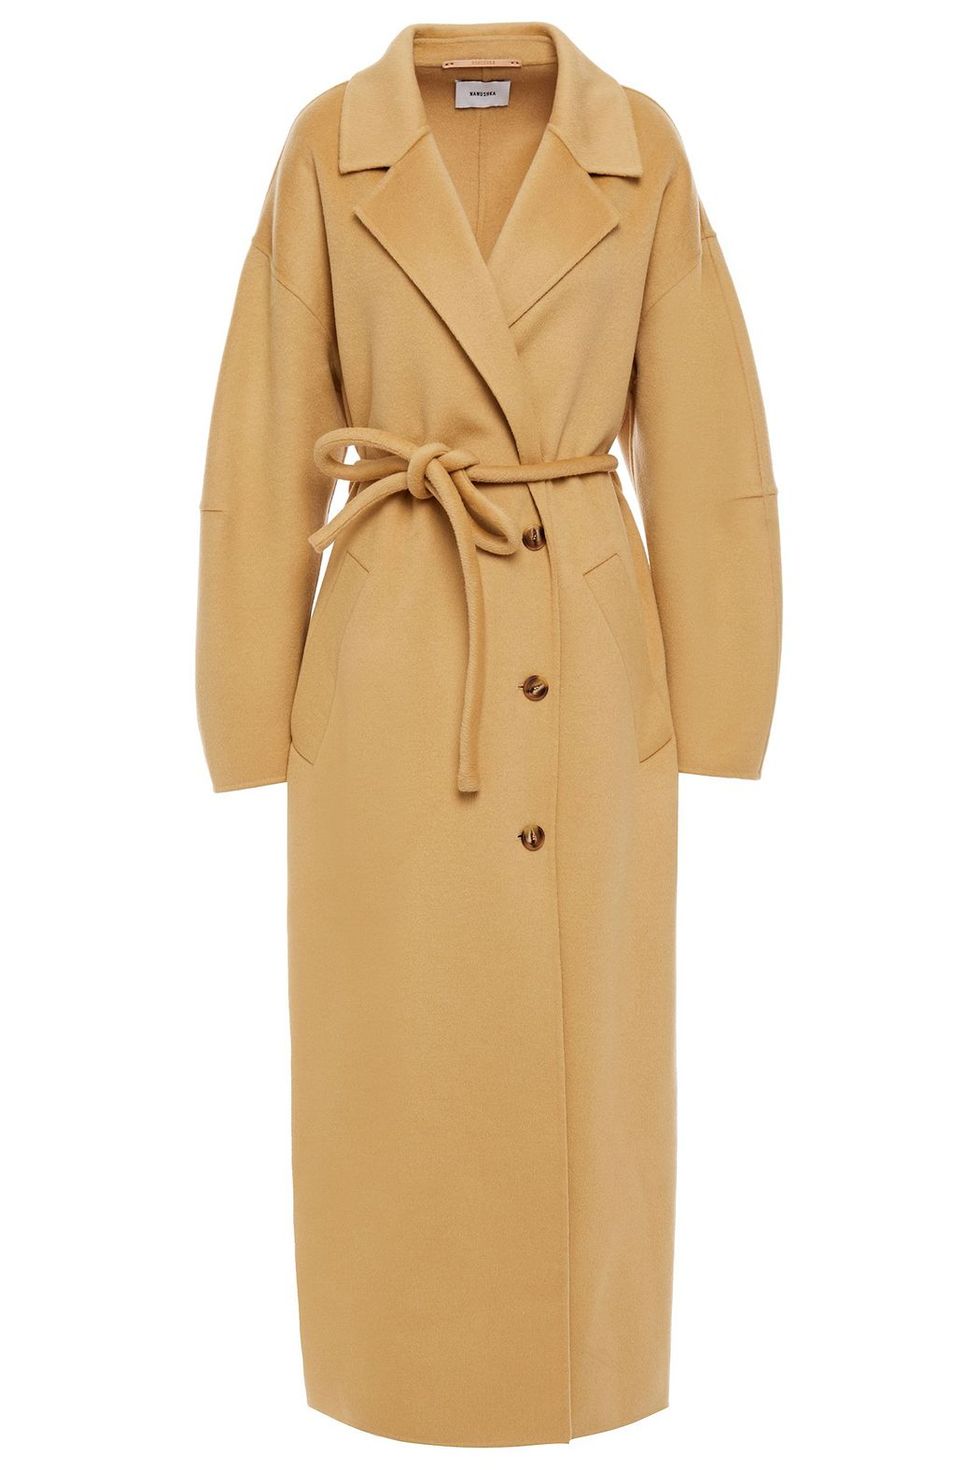 Moda Cappotti 2021: cappotto lana & seta